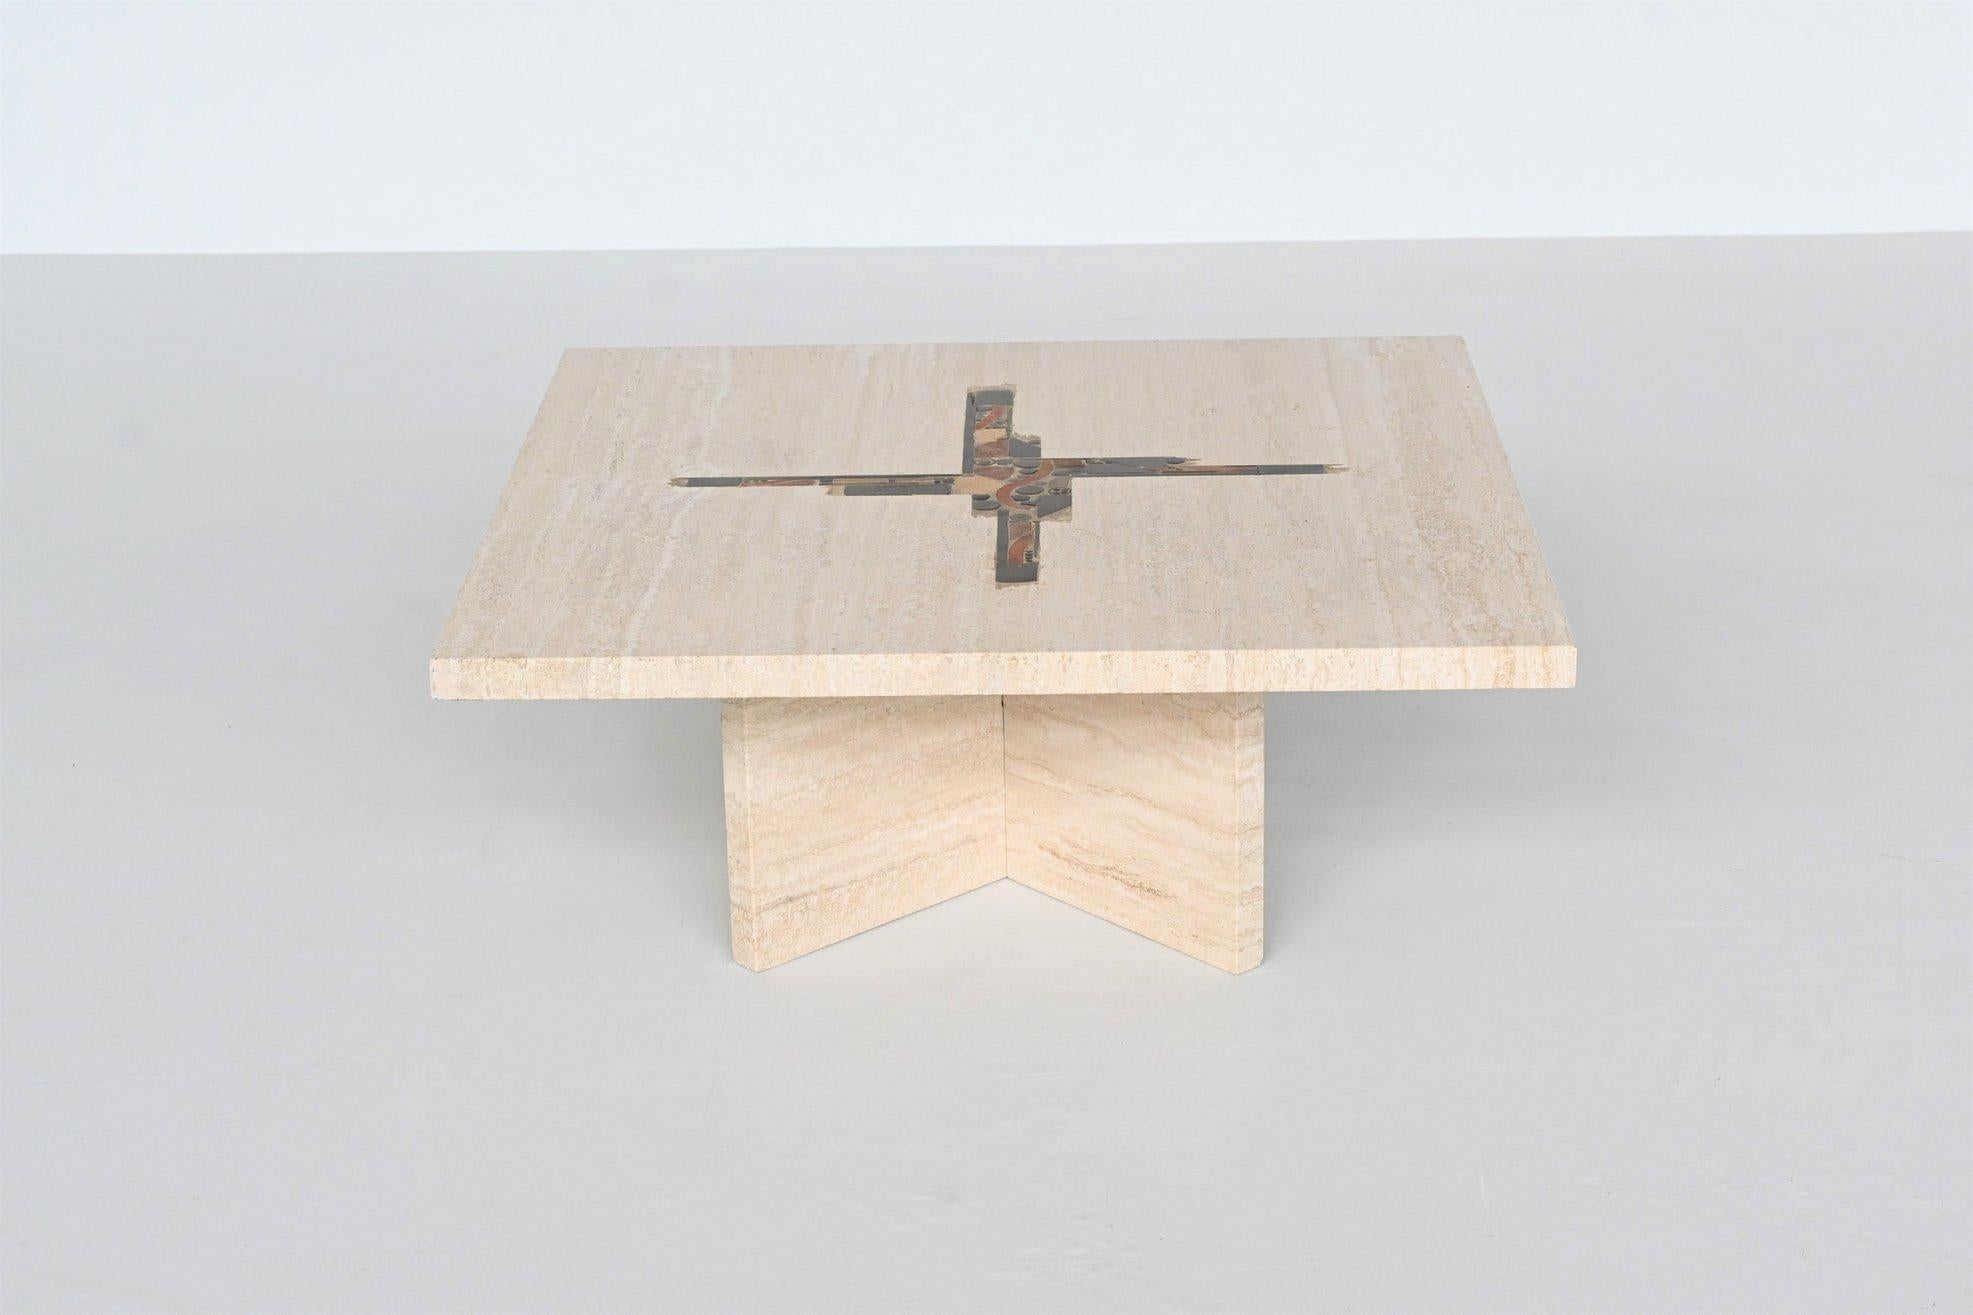 Magnifique table basse de forme carrée conçue et fabriquée par Paul Kingma, Pays-Bas 1980. Le lourd plateau en travertin massif blanc repose sur un socle en croix en travertin, composé de deux parties. Une belle composition de travertin, de pierres